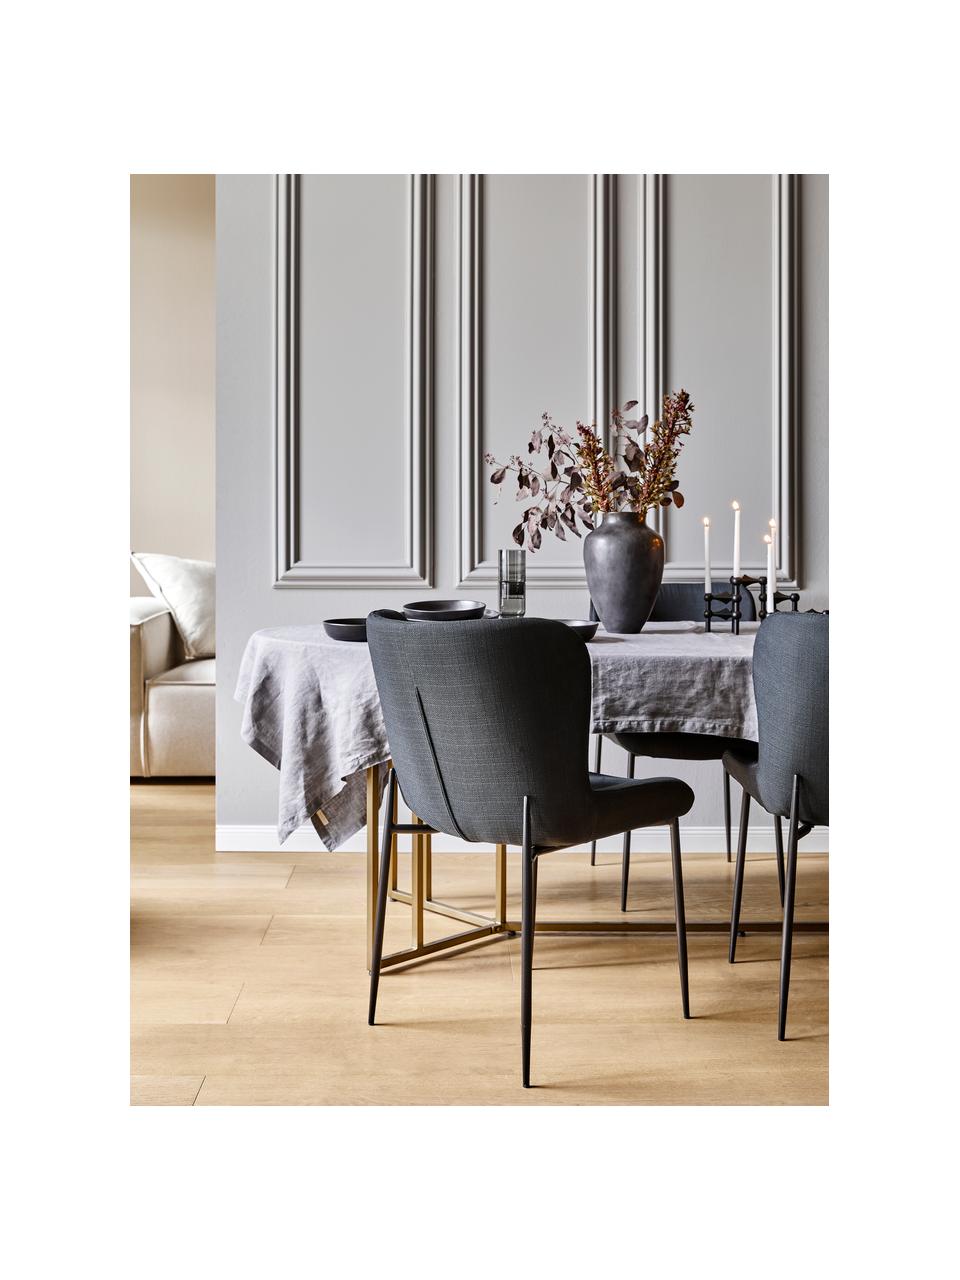 Gestoffeerde stoel Tess in zwart, Bekleding: polyester, Poten: metaal, gepoedercoat, Geweven stof zwart, B 49 x D 64 cm